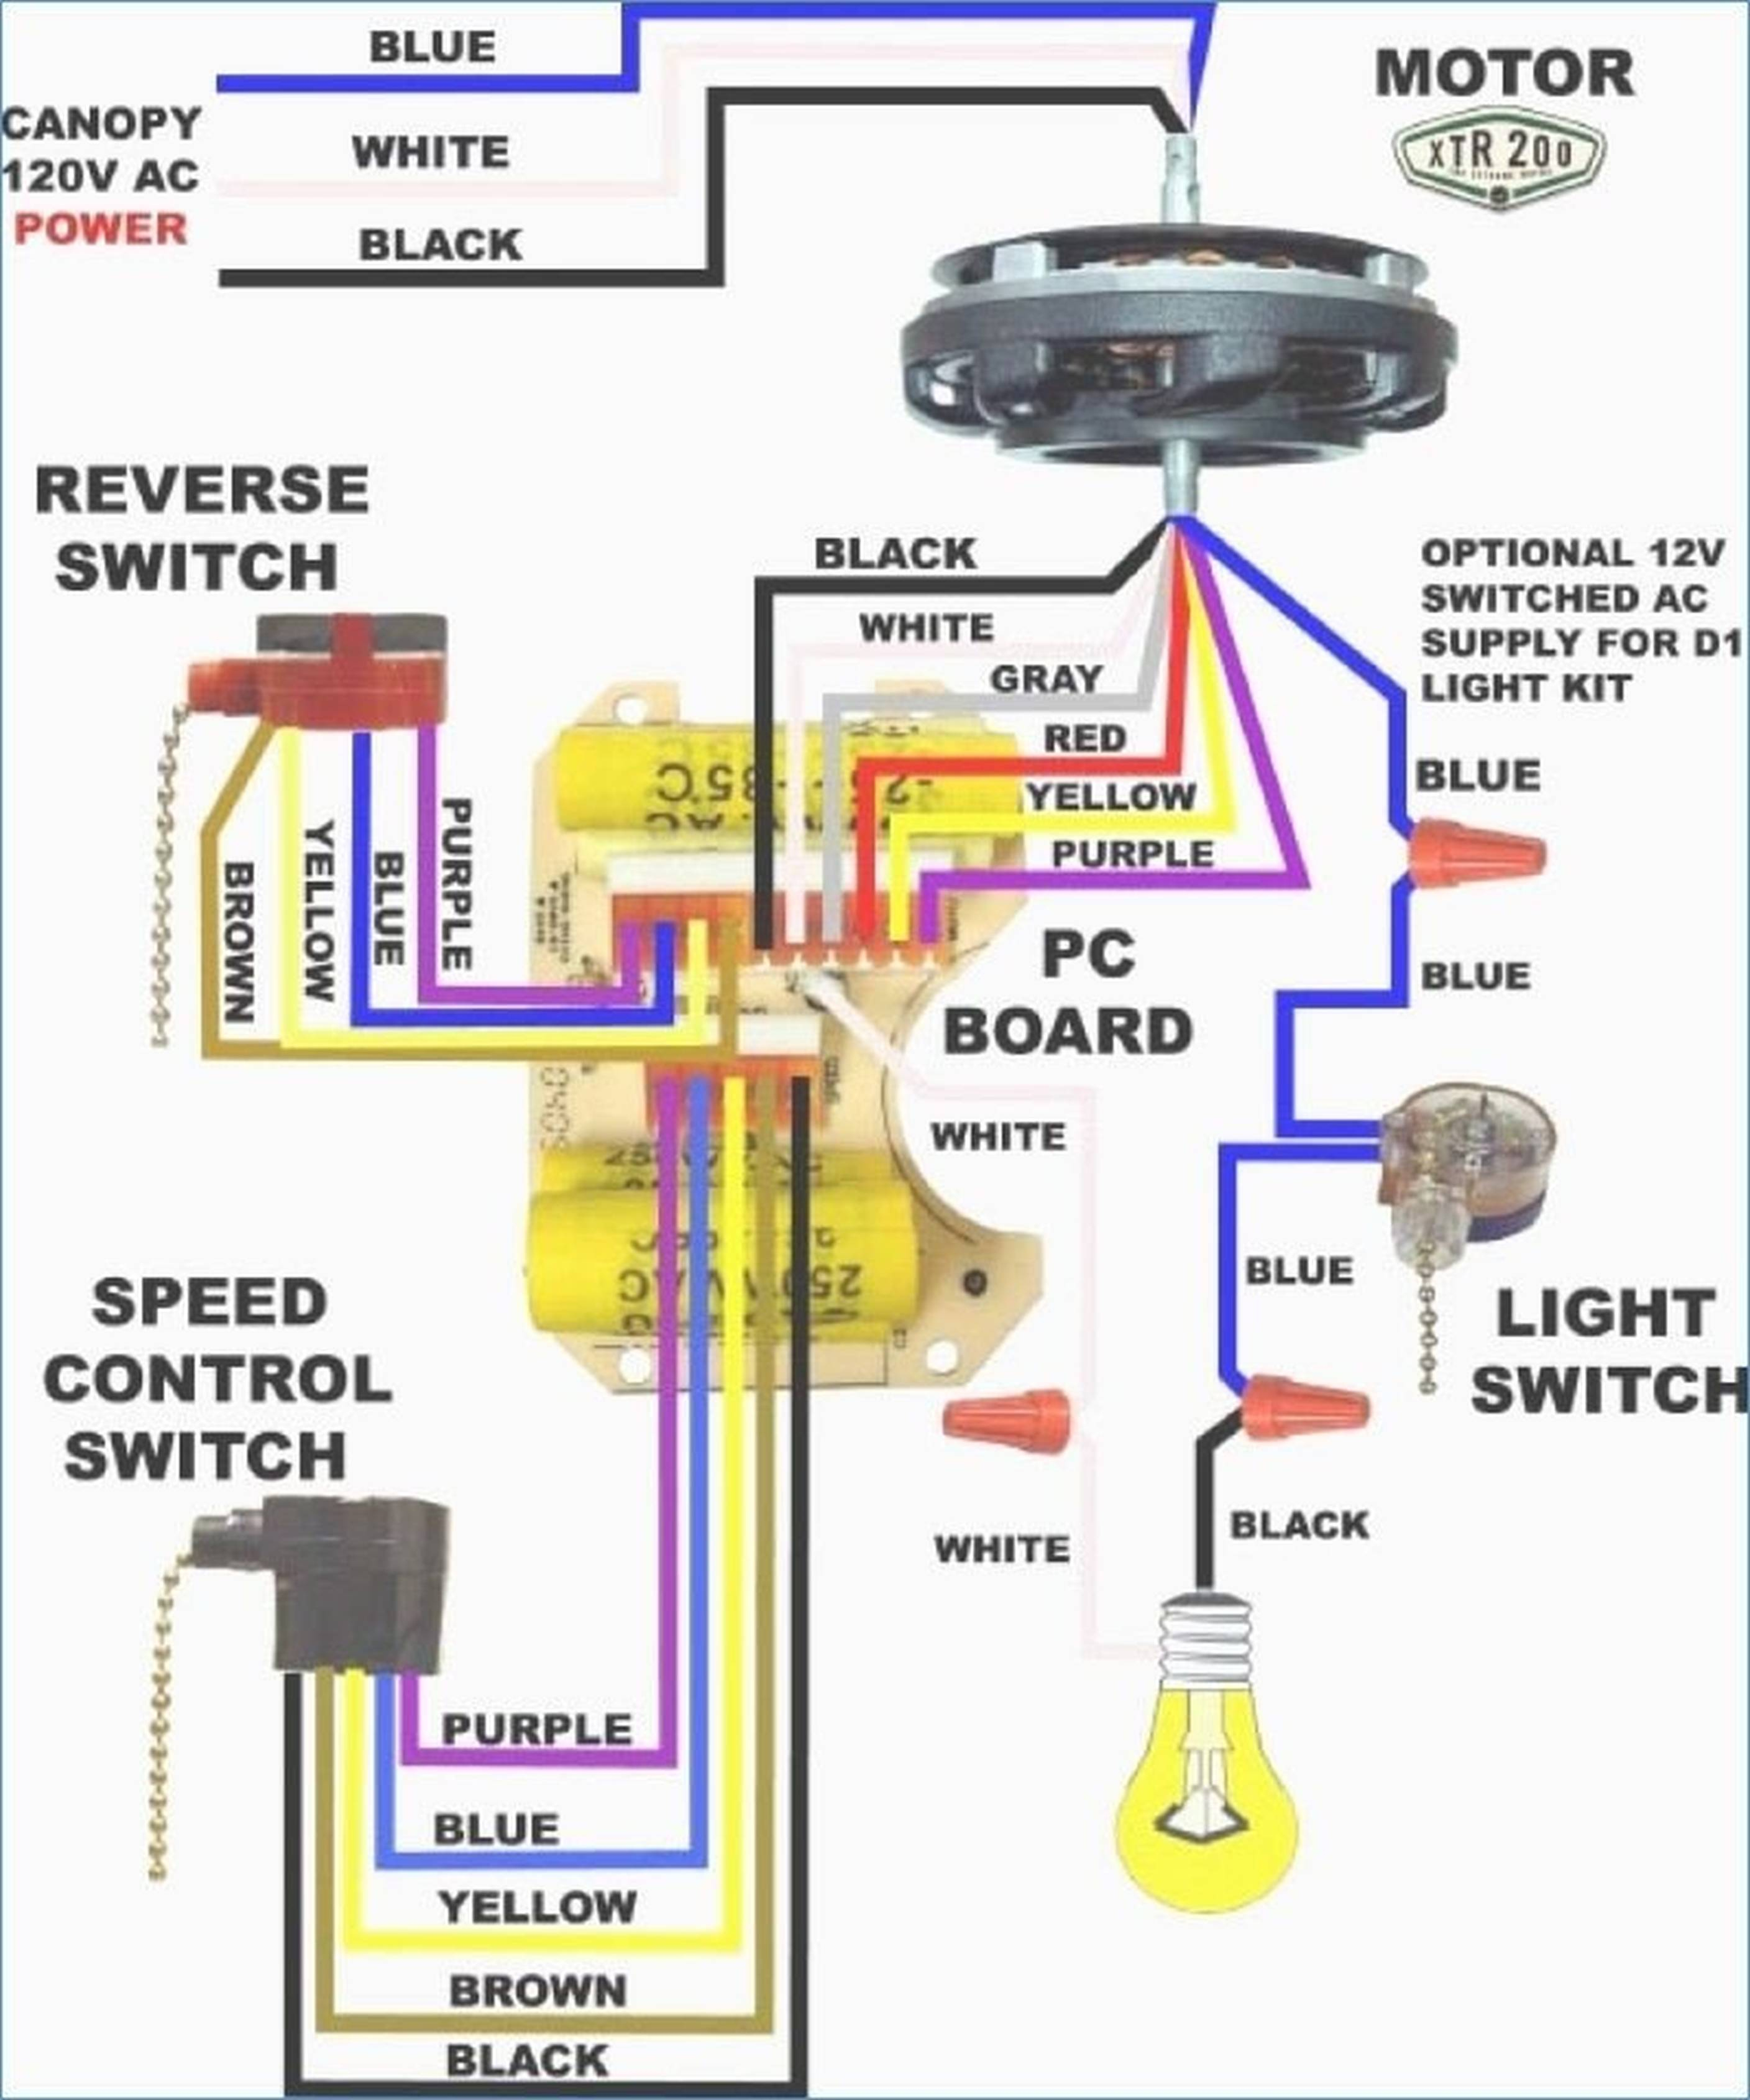 Hampton Bay Light Kit Wiring Diagram Wiring Diagrams Source